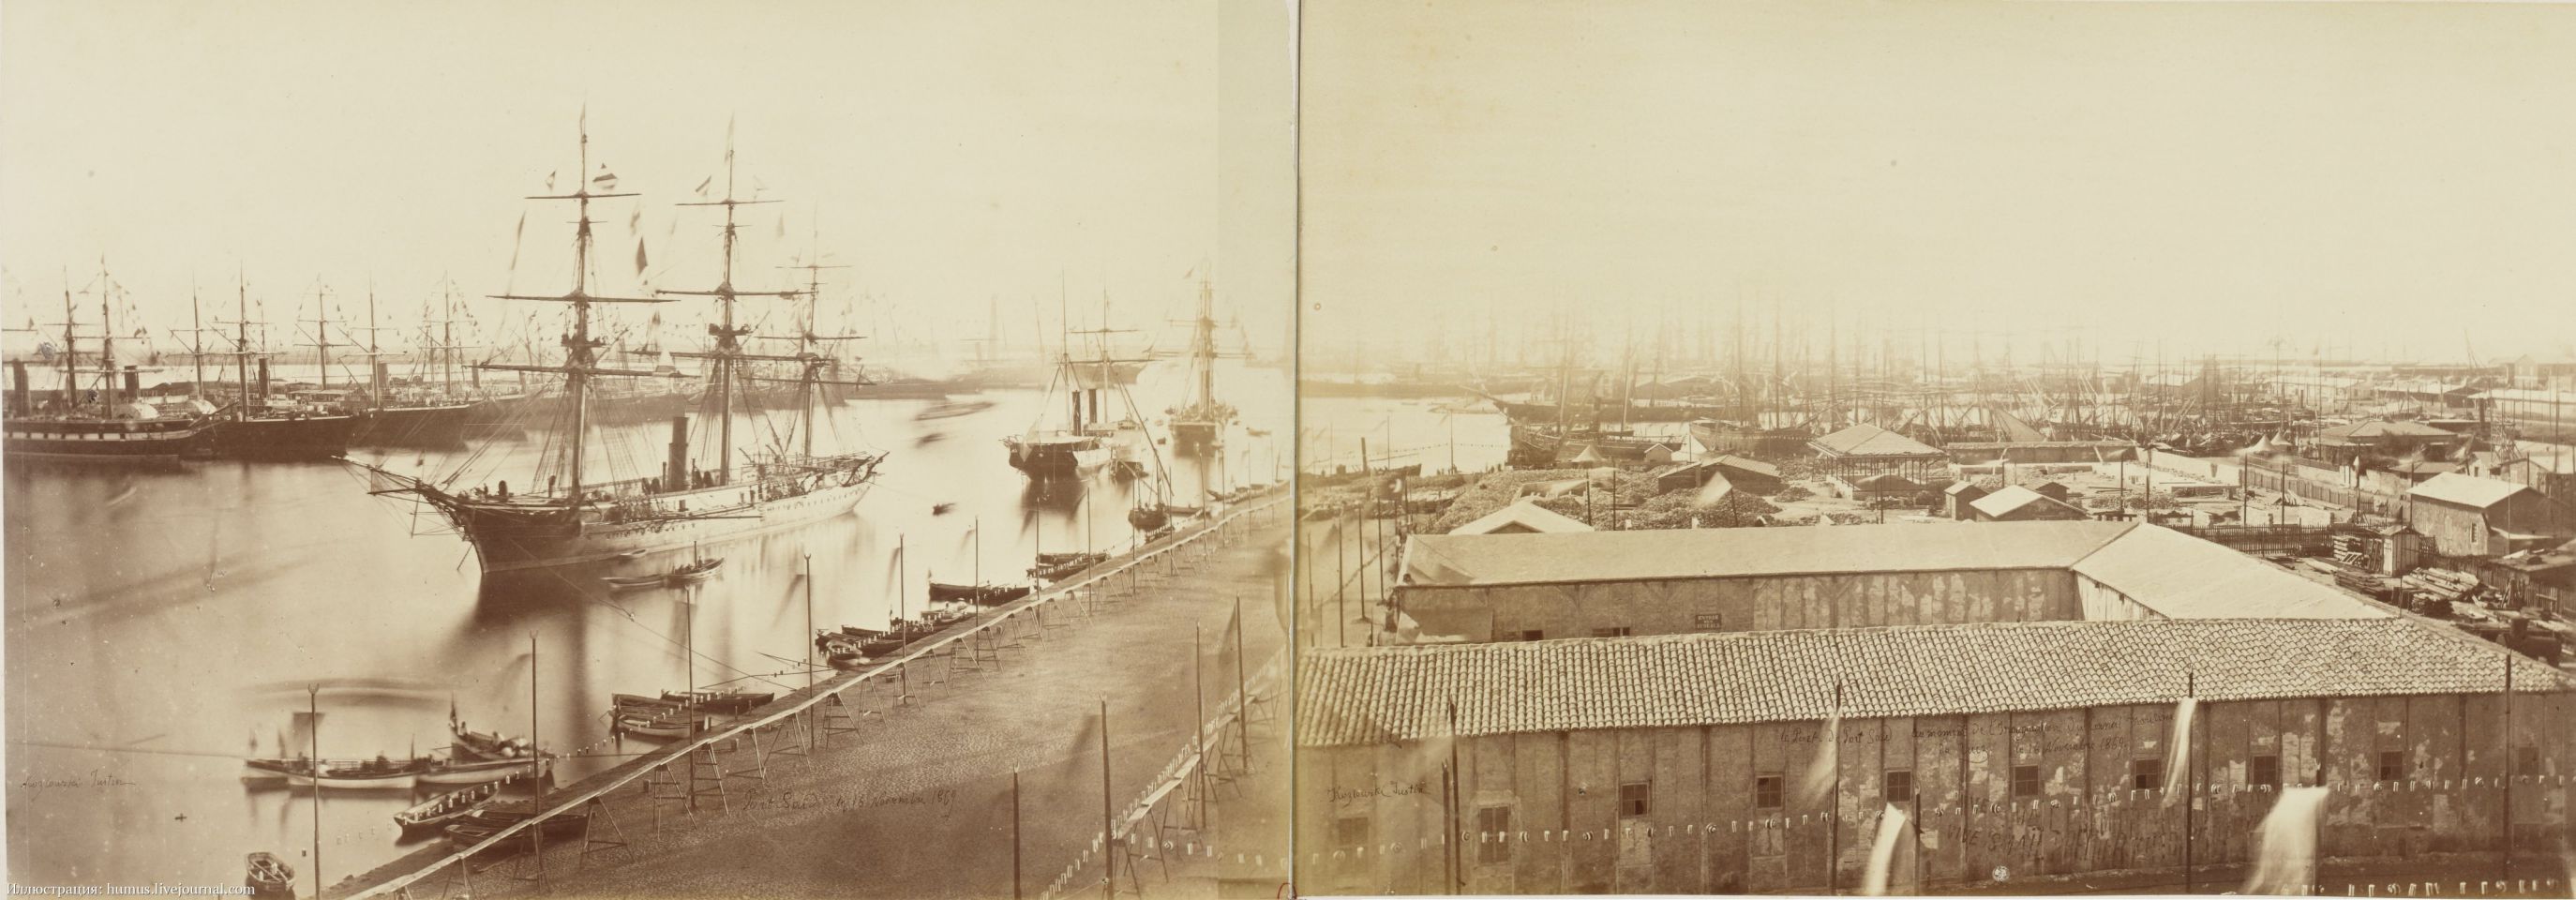 Джастин Козловски. Порт-Саид. 1869 - иллюстрация-к-материалу-иа-regnum